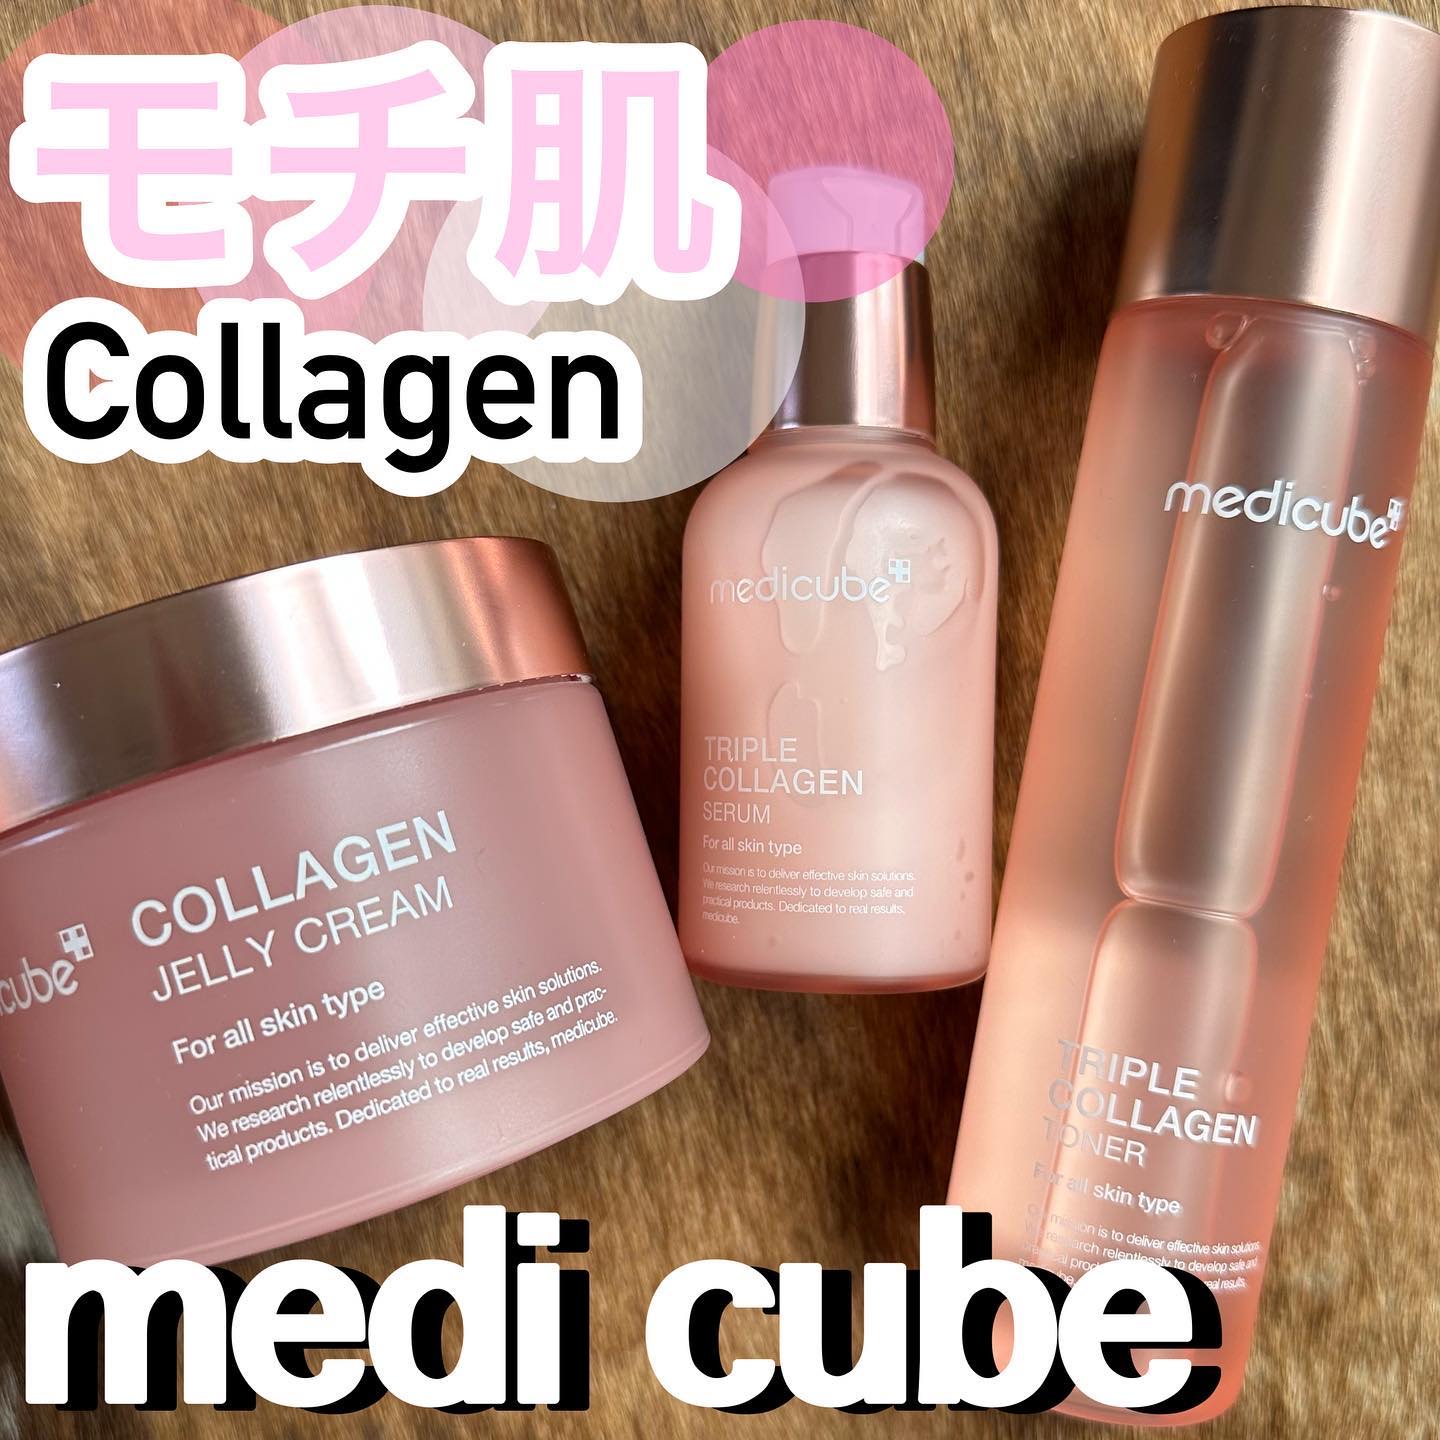 MEDICUBEのスキンケア・基礎化粧品 もち肌コラーゲンセラム3.0他、3